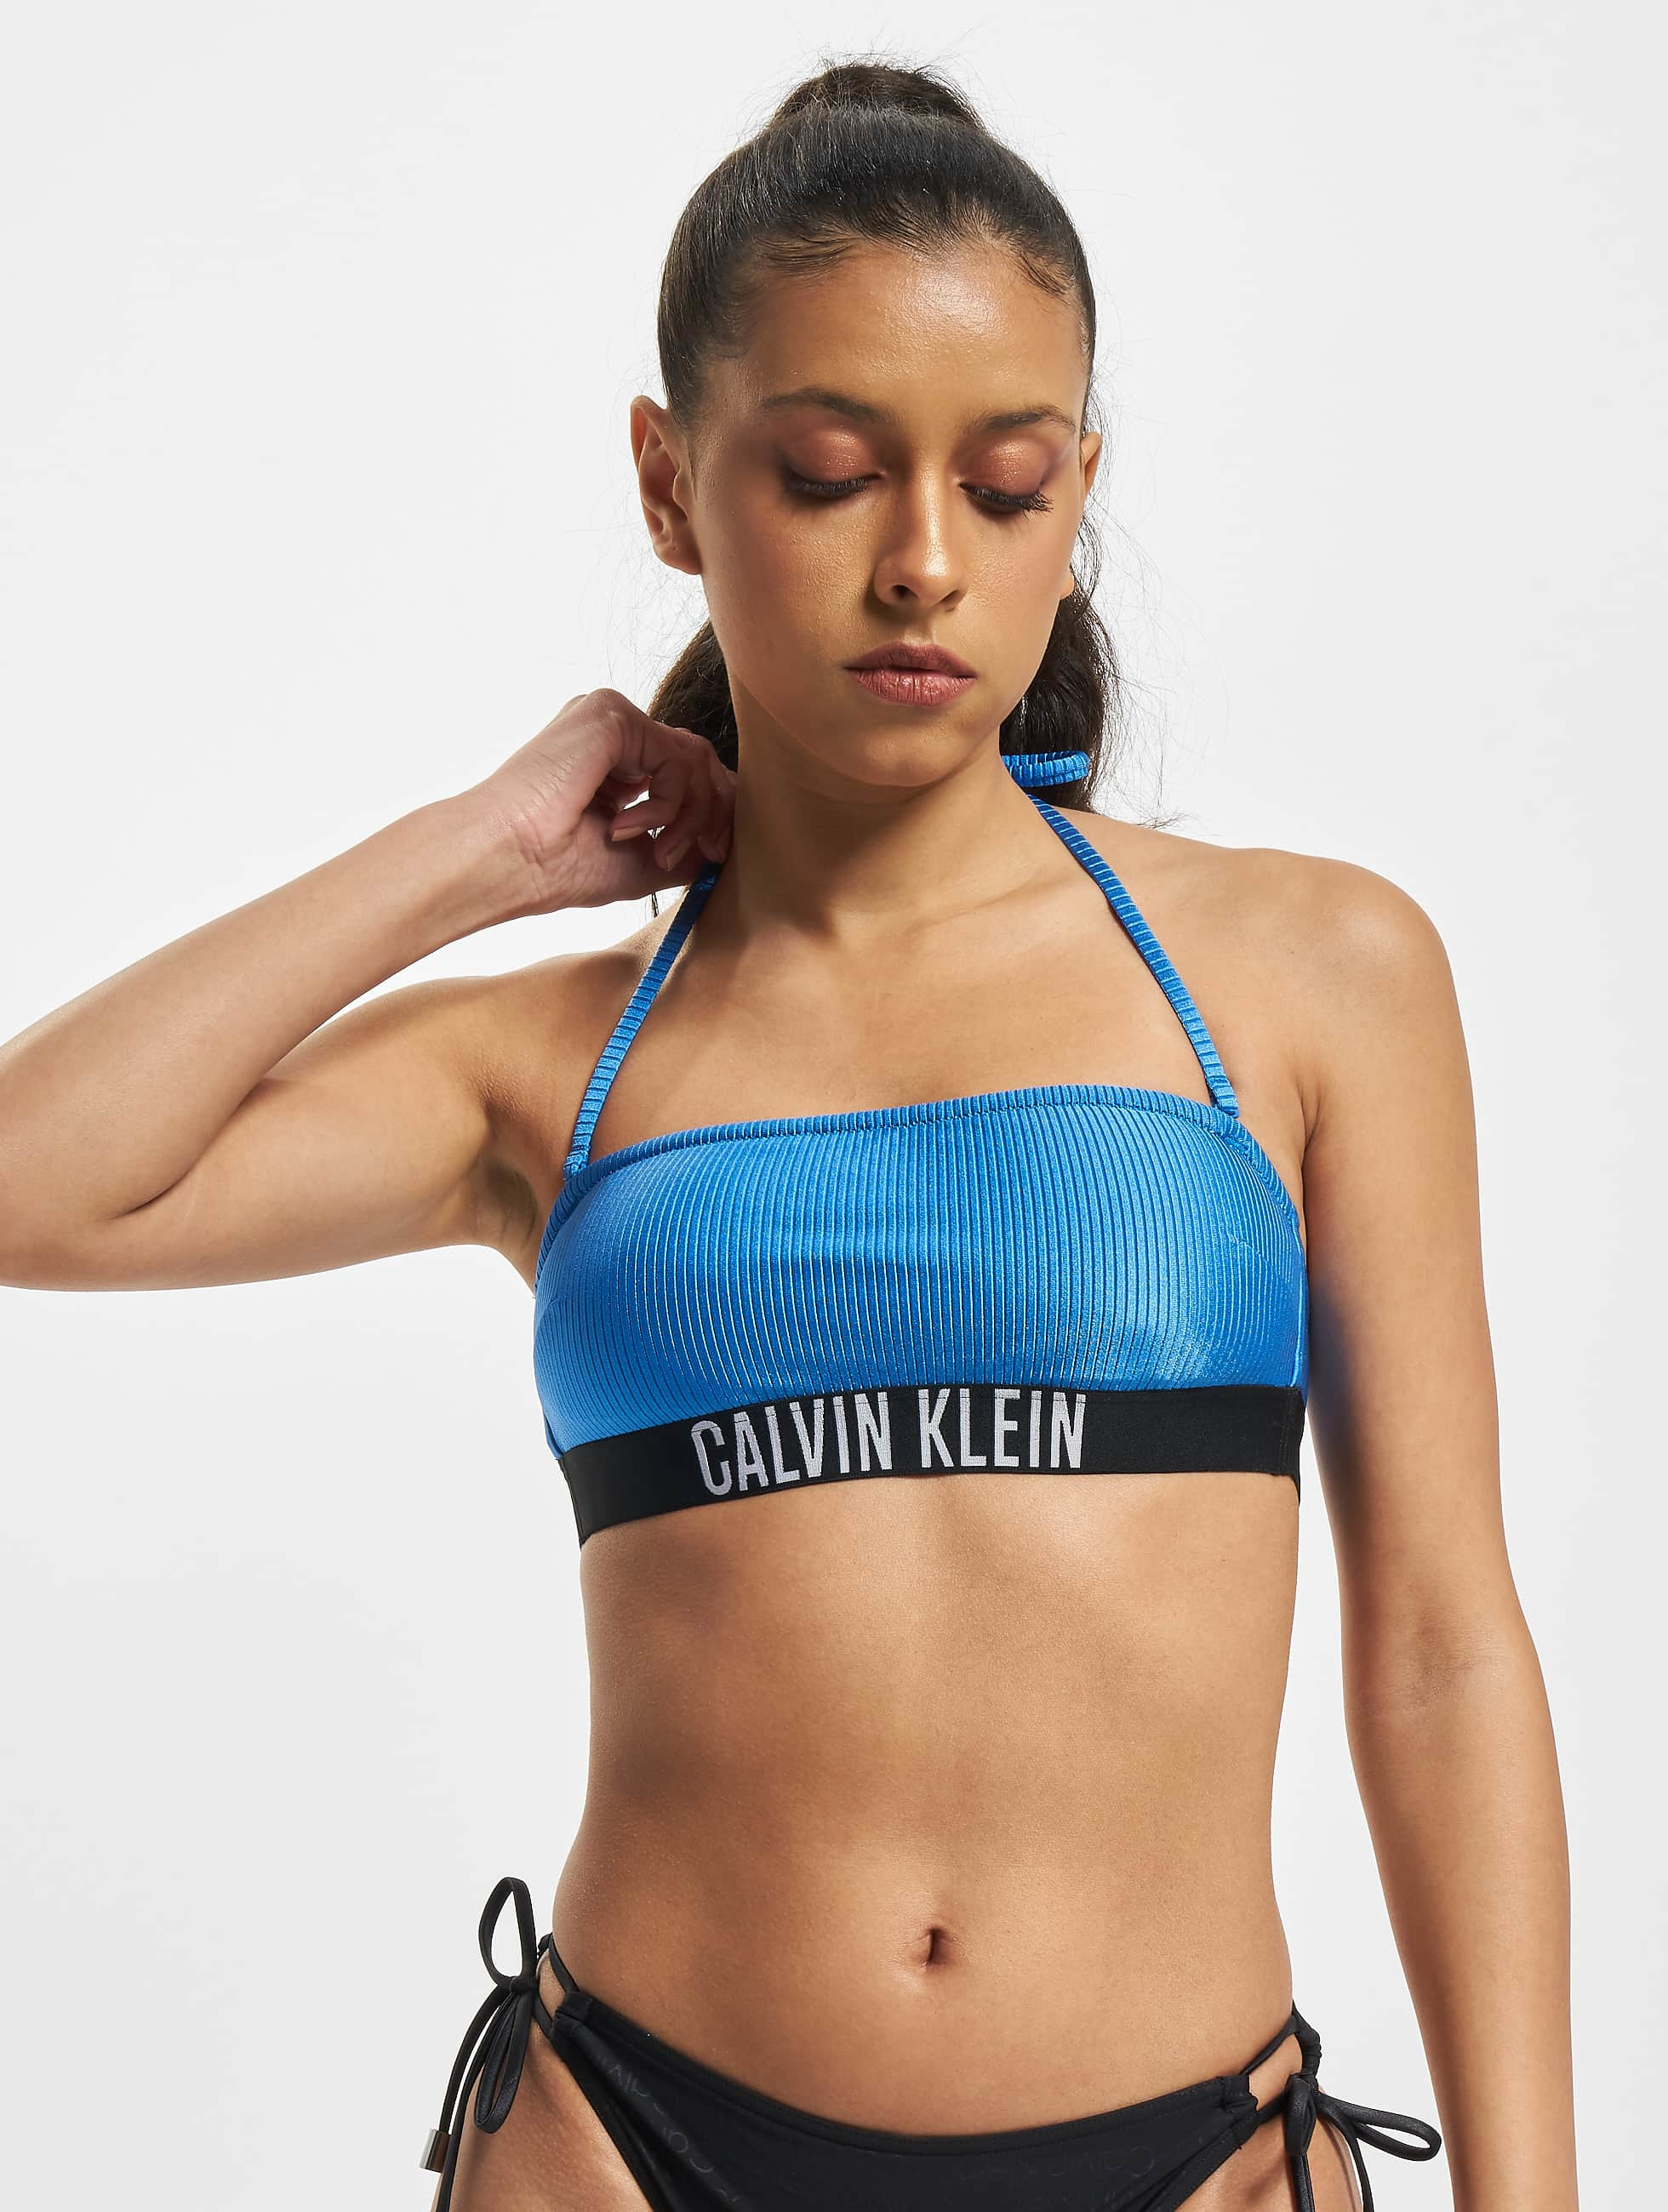 Calvin Klein Underwear / Beachwear / Bikini Underwear in blue 972895